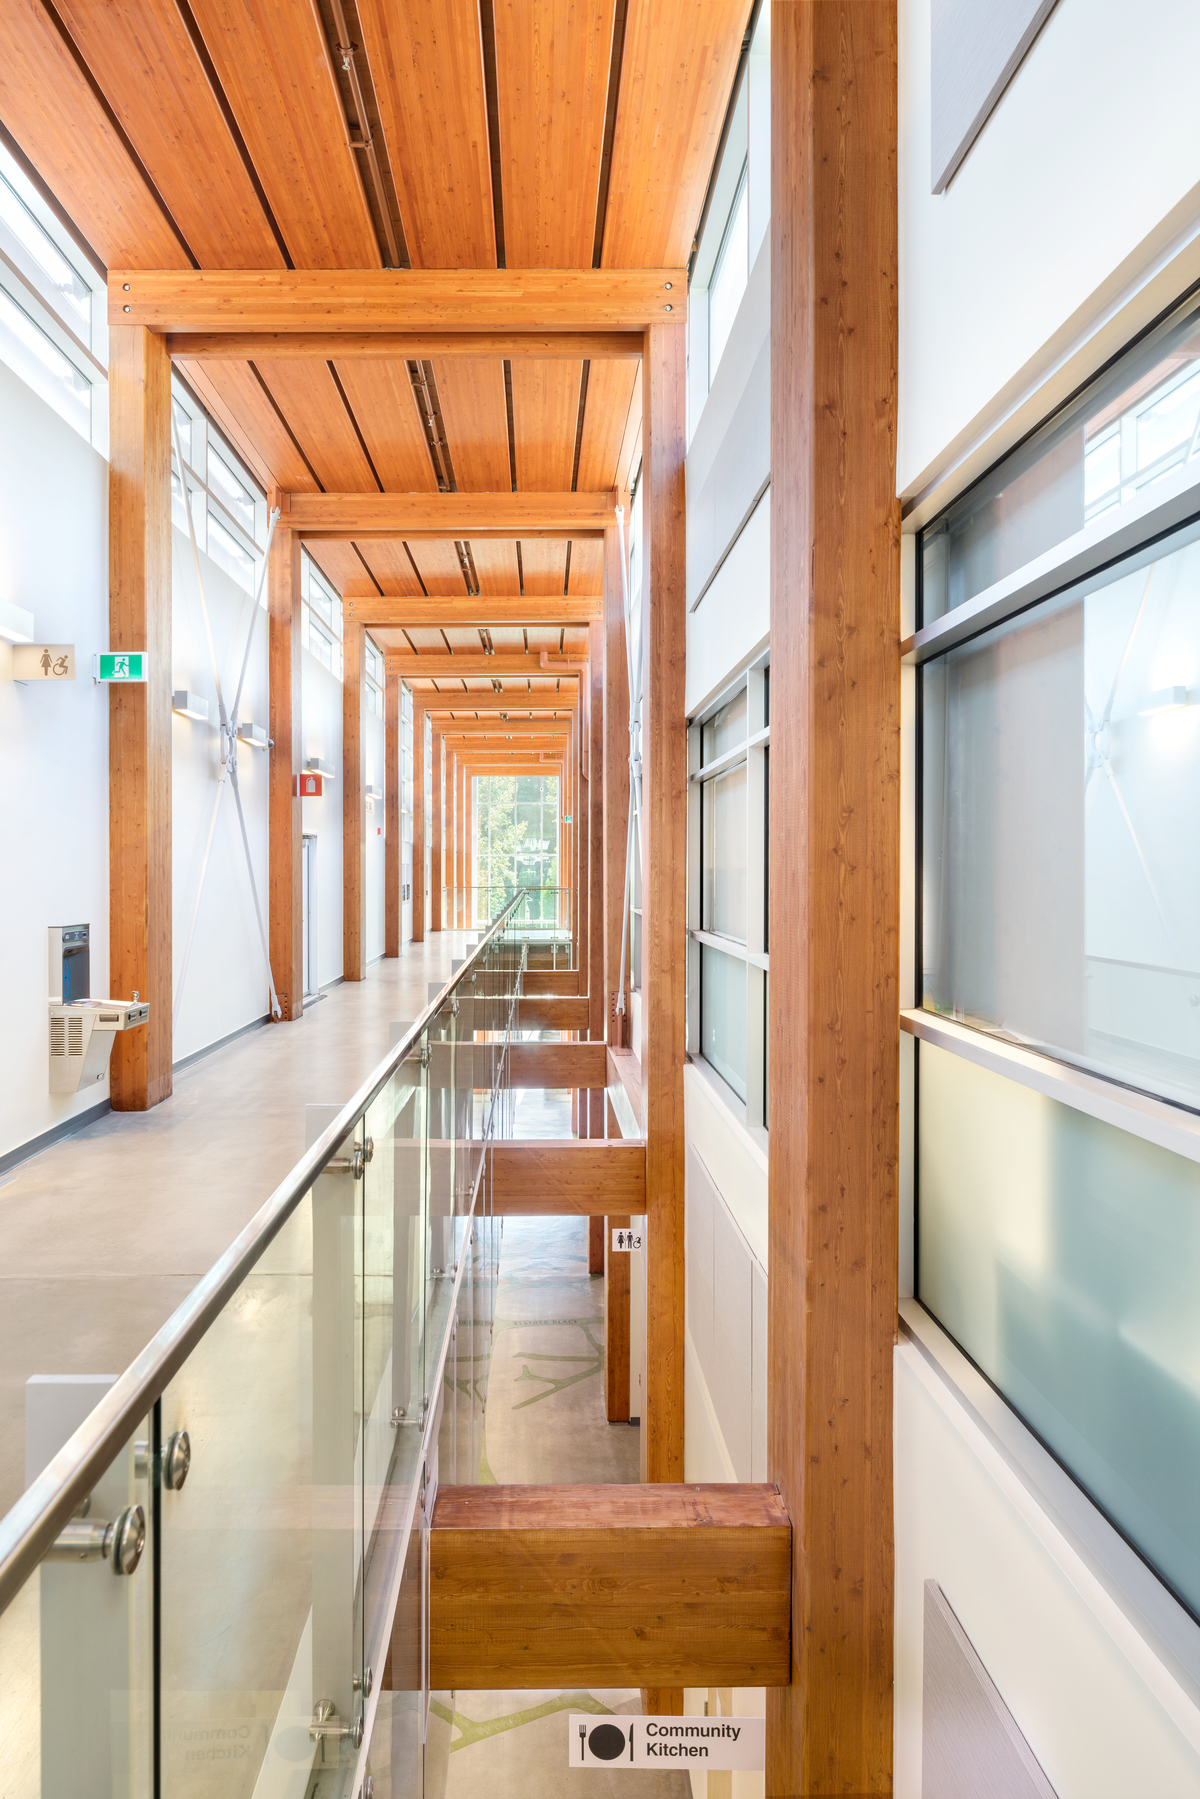 德尔布鲁克社区娱乐中心多层主走廊的顶楼内部视图，展示了由胶合木梁和柱支撑的美学木板